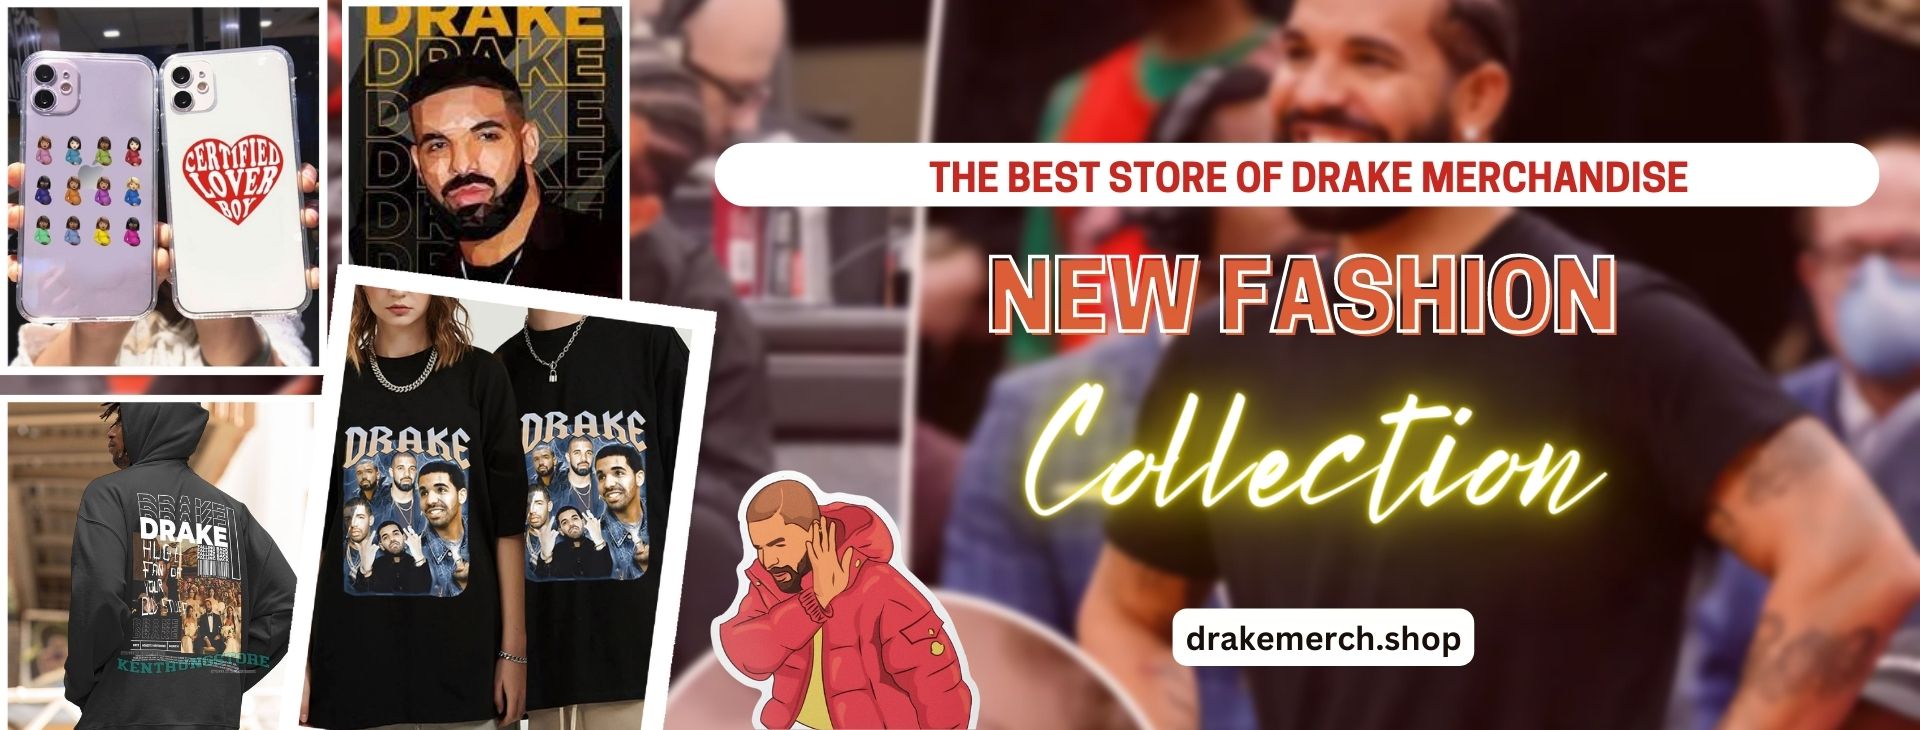 no edit drake banner - Drake Shop